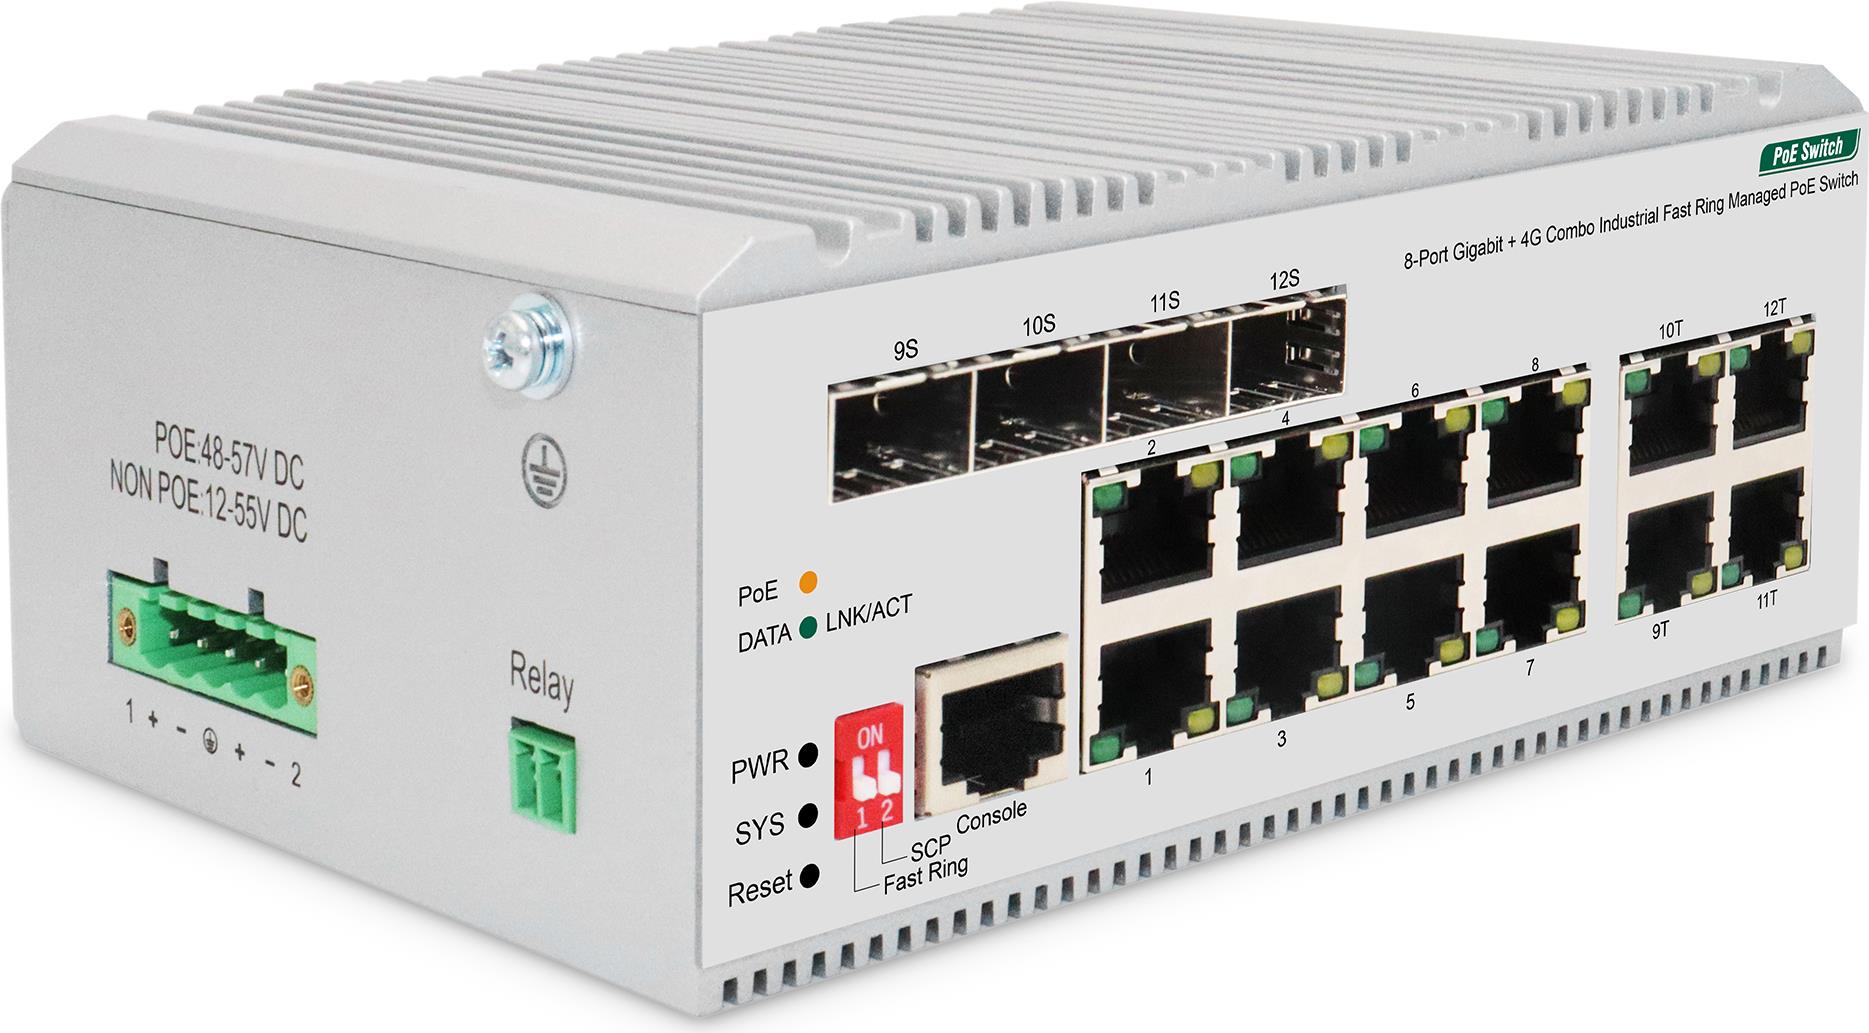 Digitus 8 Port Gigabit Ethernet Netzwerk PoE Switch, Industrial, L2 managed, 4 SFP Uplink. Switch-Typ: Managed, Switch-Ebene: L2. Basic Switching RJ-45 Ethernet Ports-Typ: Gigabit Ethernet (10/100/1000), Anzahl der basisschaltenden RJ-45 Ethernet Ports: 8, Konsolen-Port: RJ-45. Vollduplex. MAC-Adressentabelle: 8000 Eintragungen, Routing-/Switching-Kapazität: 24 Gbit/s. Netzstandard: IEEE 802.1D, IEEE 802.1Q, IEEE 802.1p, IEEE 802.1w, IEEE 802.1x, IEEE 802.3, IEEE 802.3ab, IEEE.... DC input Spannung: 48 - 57 V (DN-651139)